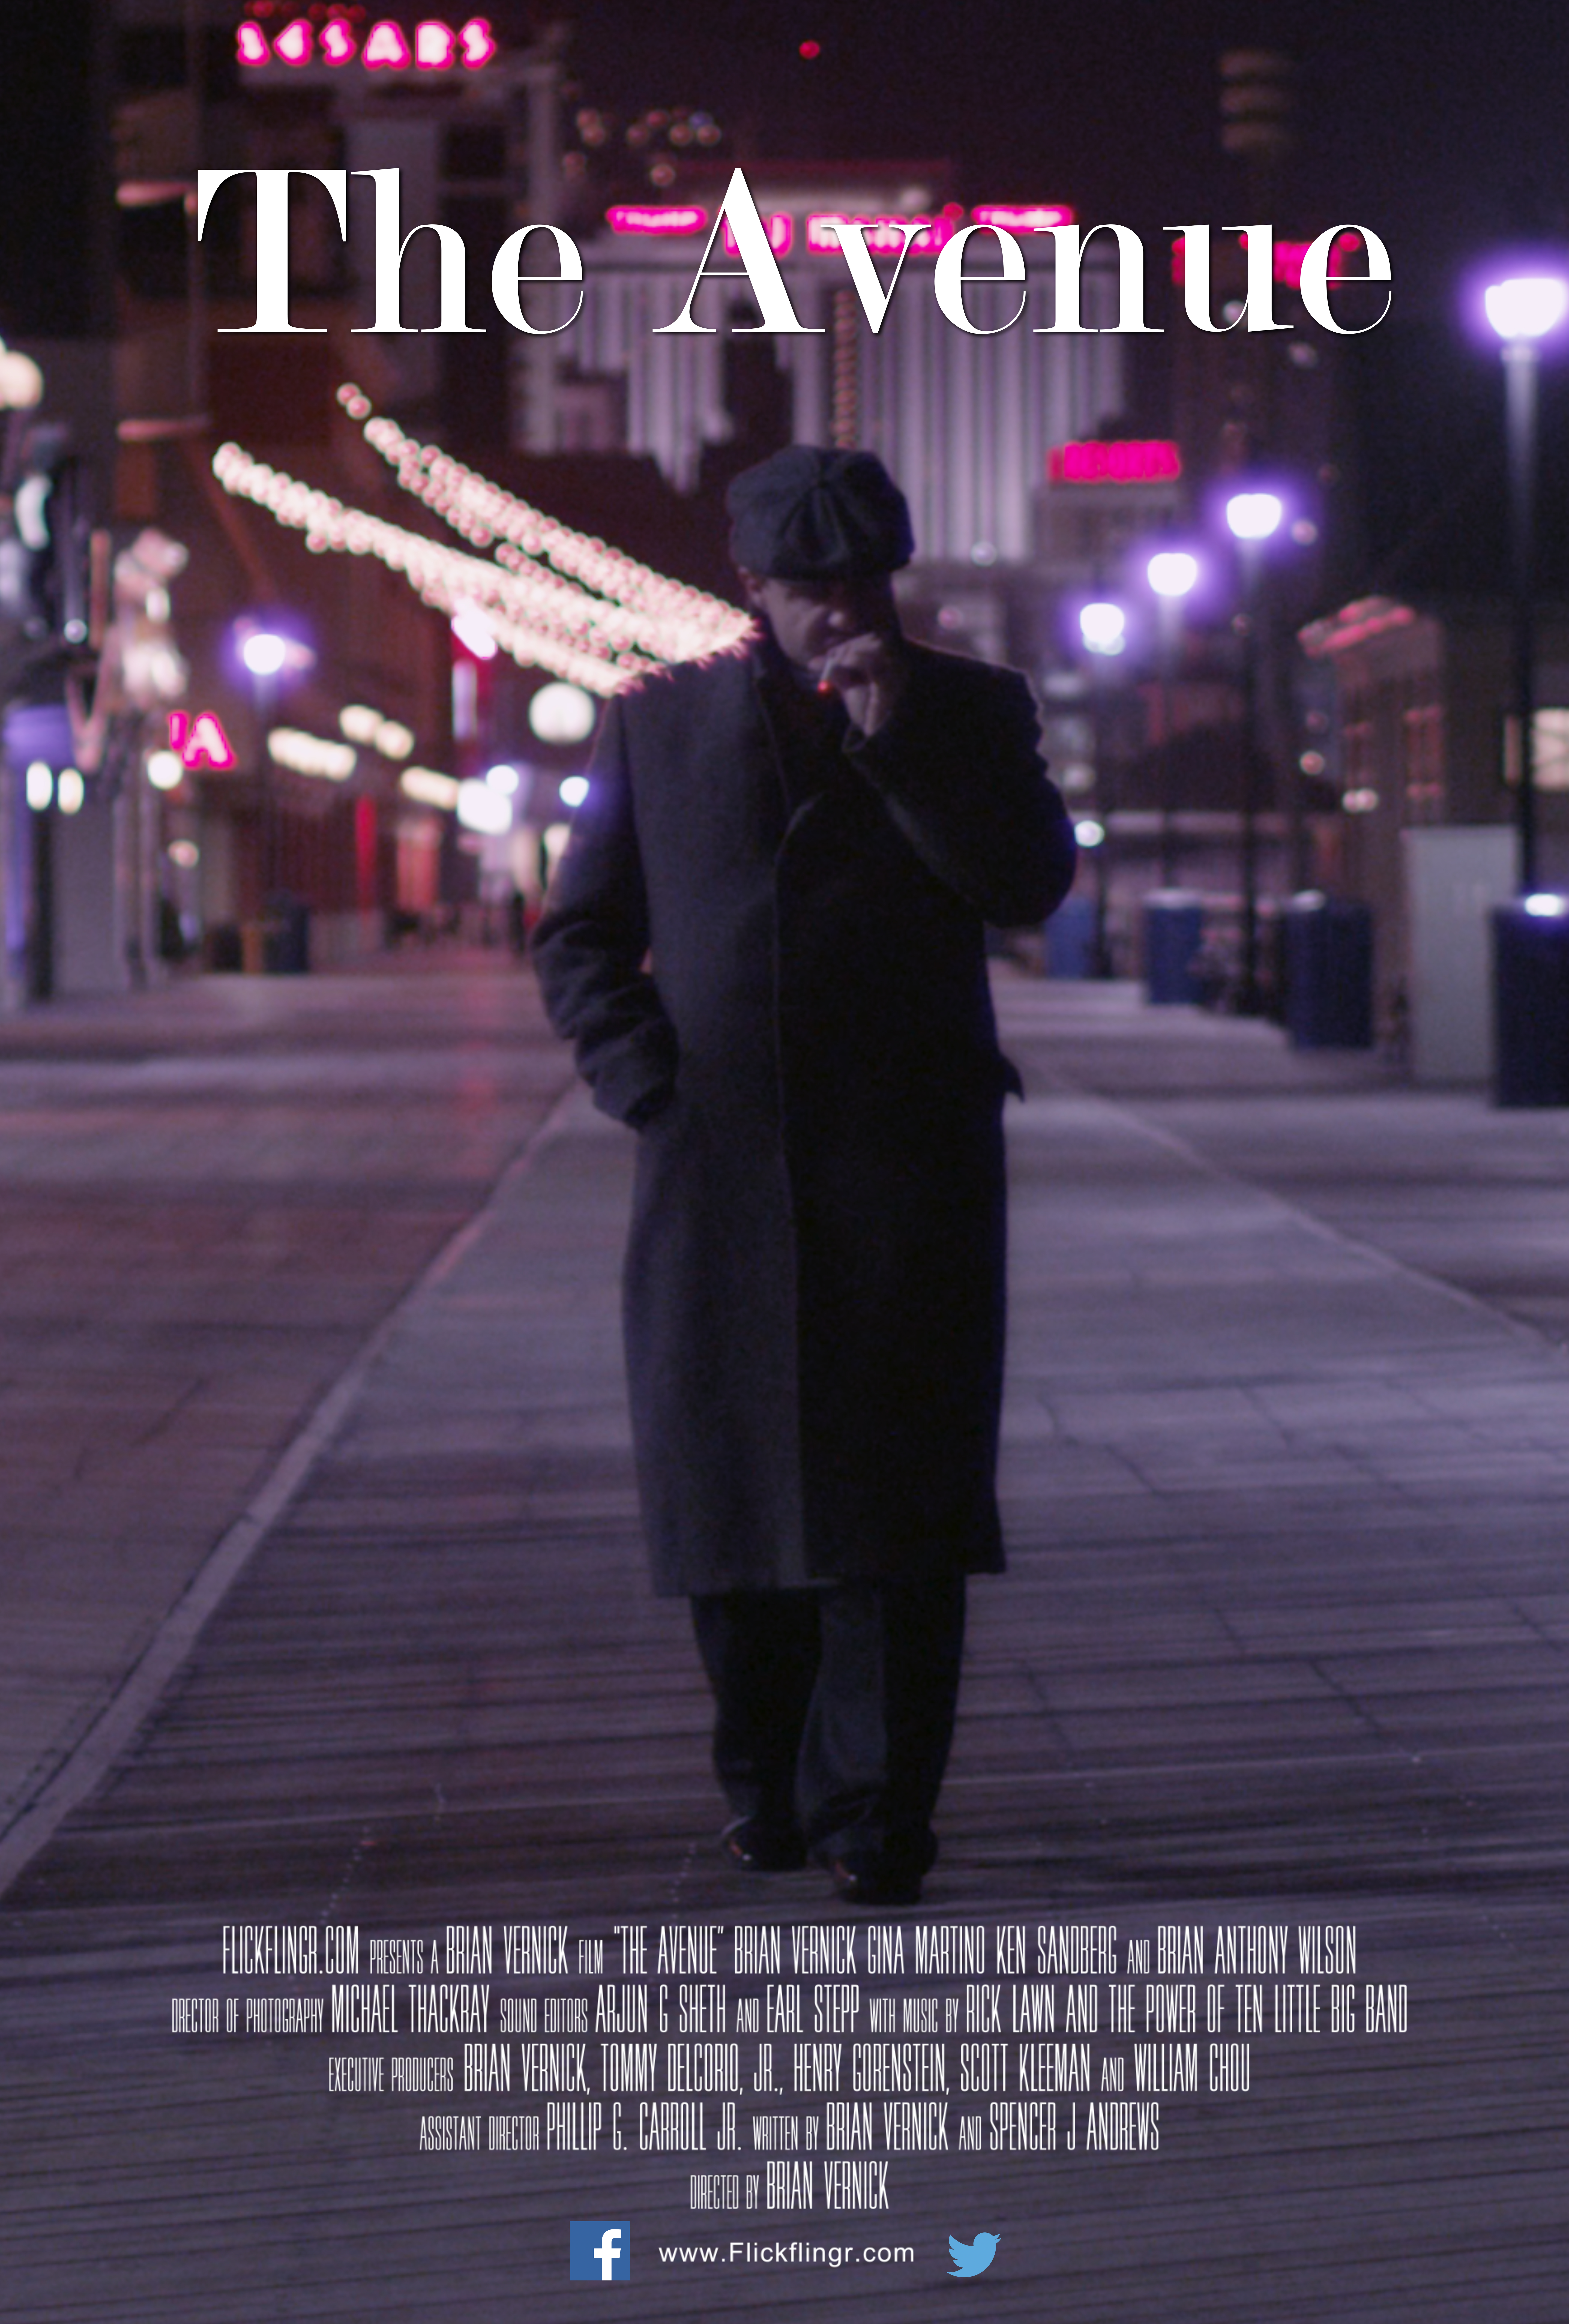 Nonton film The Avenue layarkaca21 indoxx1 ganool online streaming terbaru